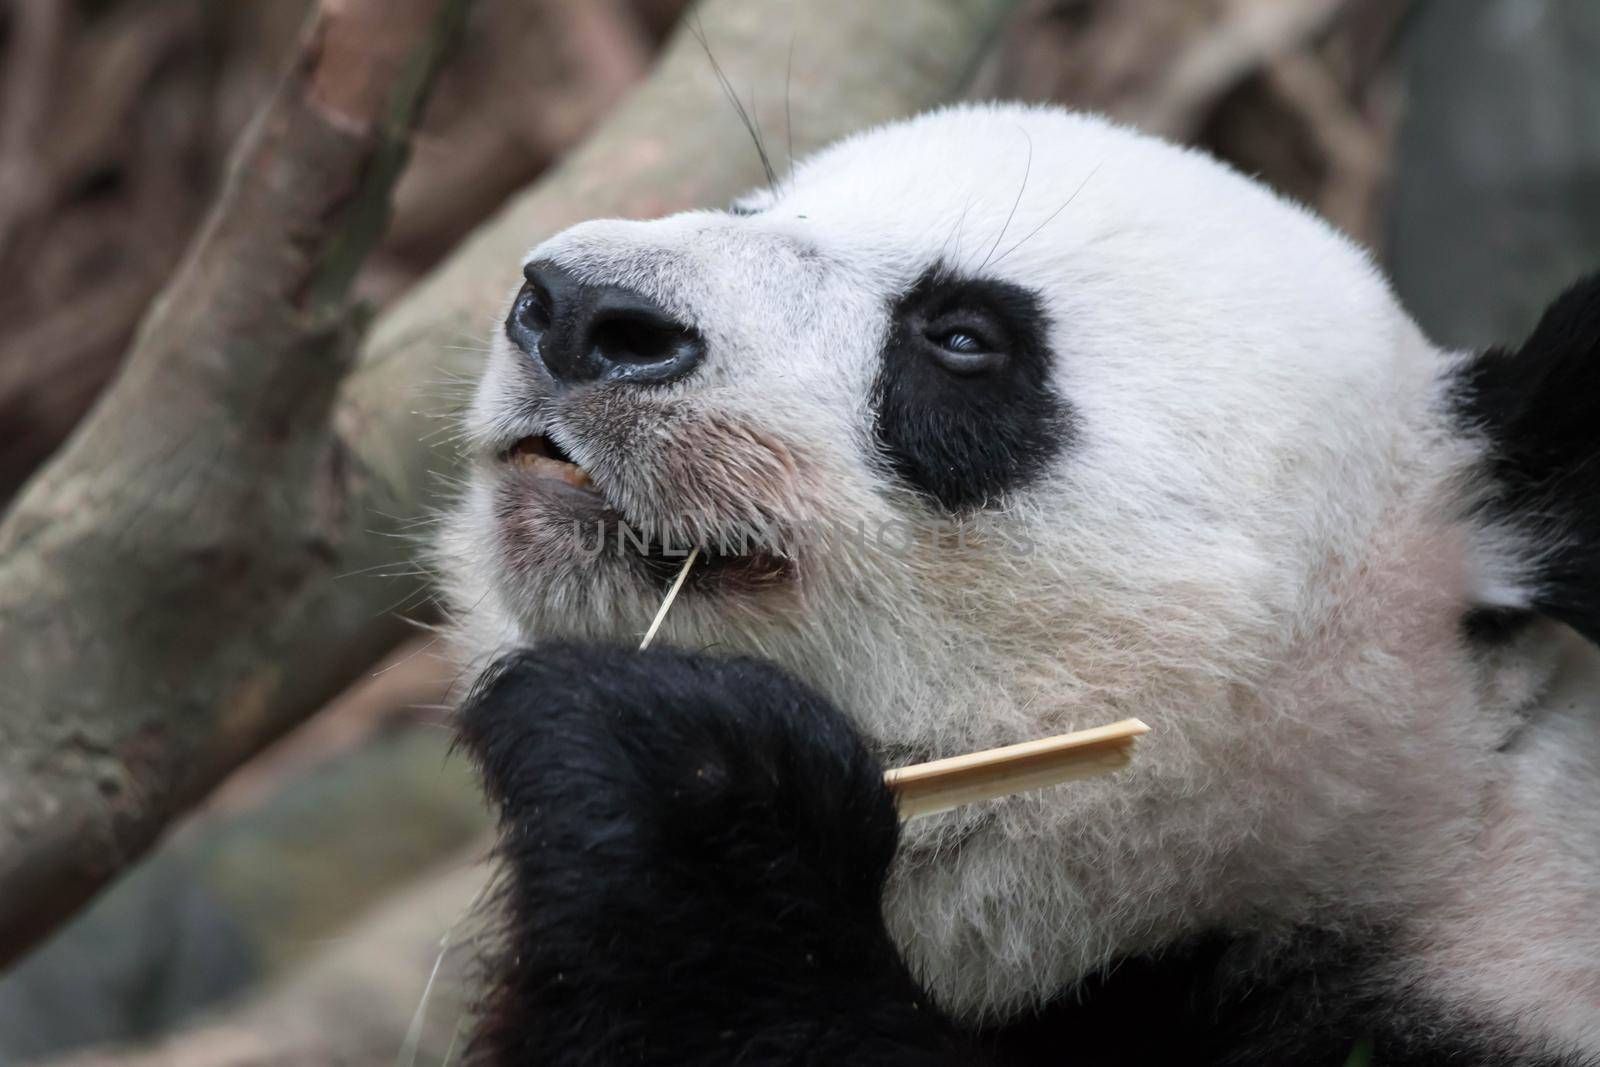 Panda bear close up shot while eating bamboo in a zoo